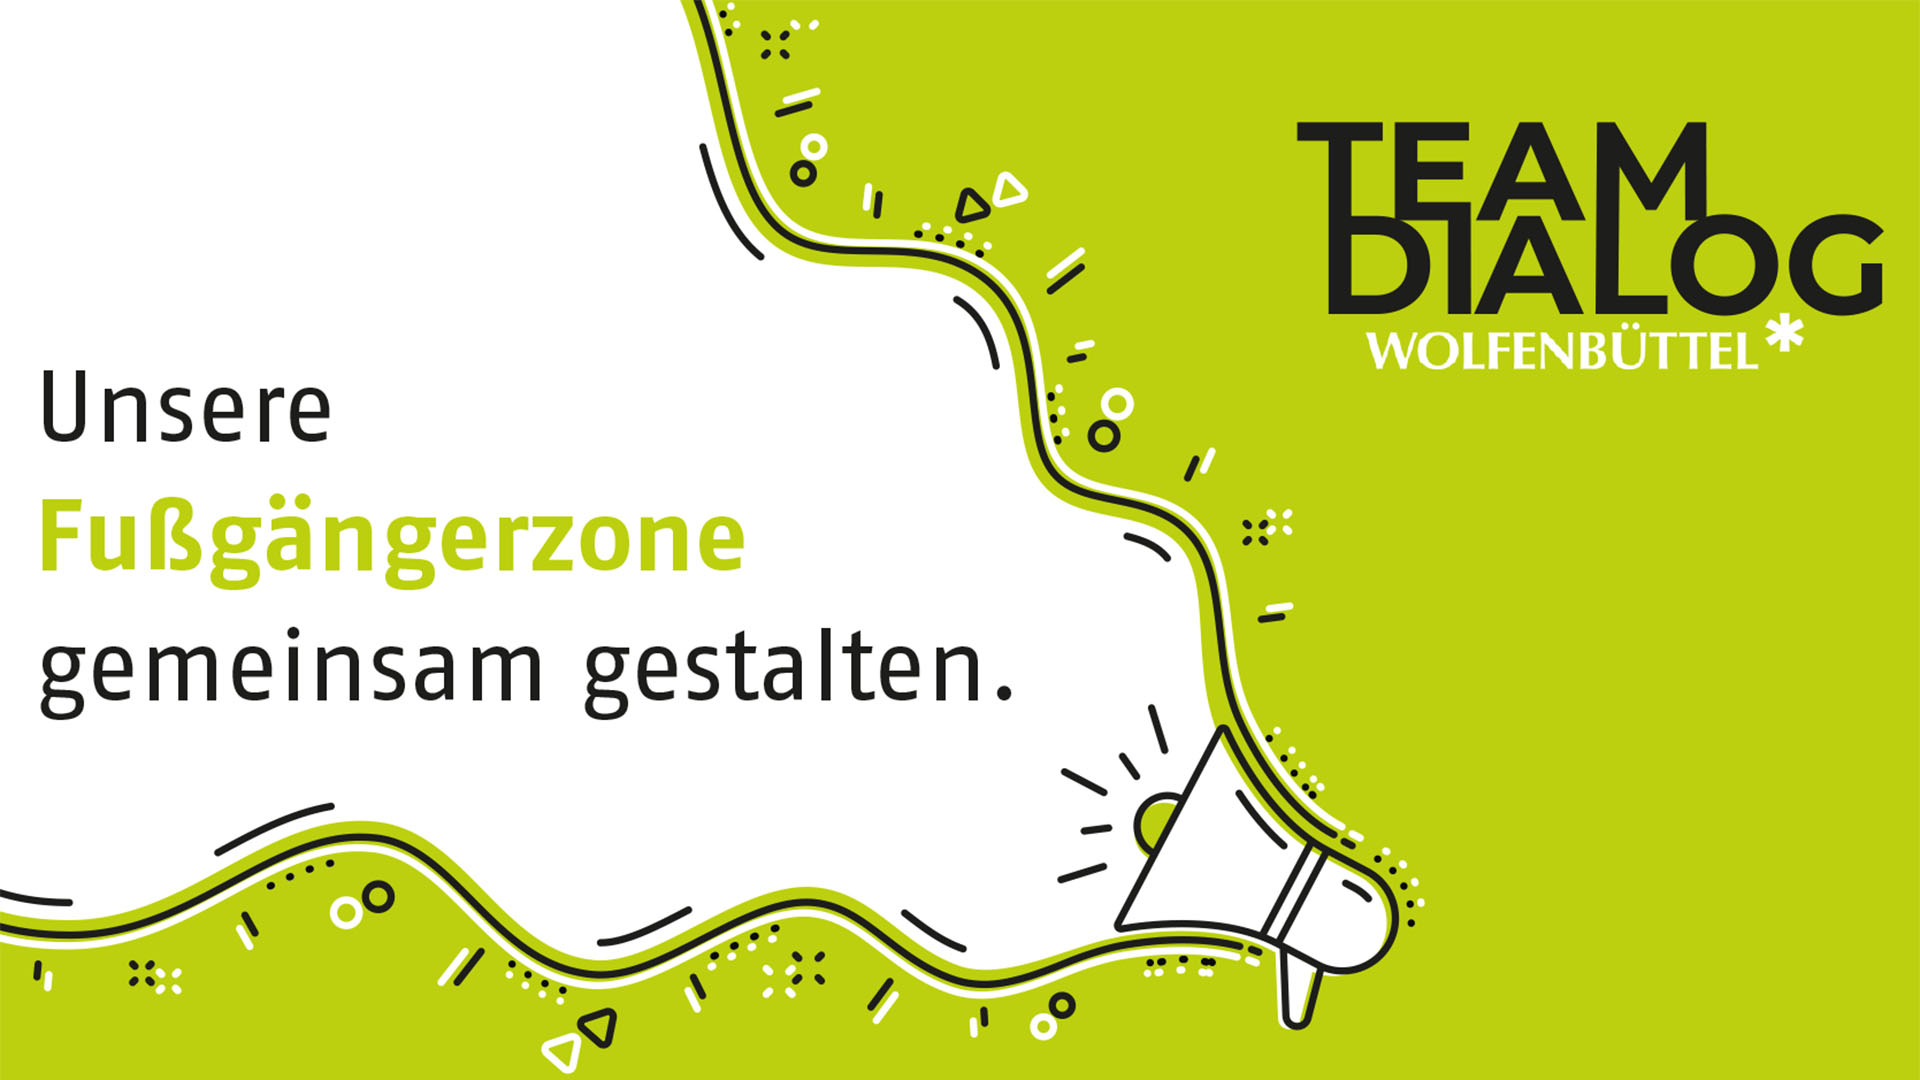 Auf grünem Grund wurde ein weißes Megaphon gezeichnet, aus ihm schienen die Worte "Unsere Fußgängerzone gemeinsam gestalten" zu kommen. Neben dem Megaphon steht "TeamDialog Wolfenbüttel."